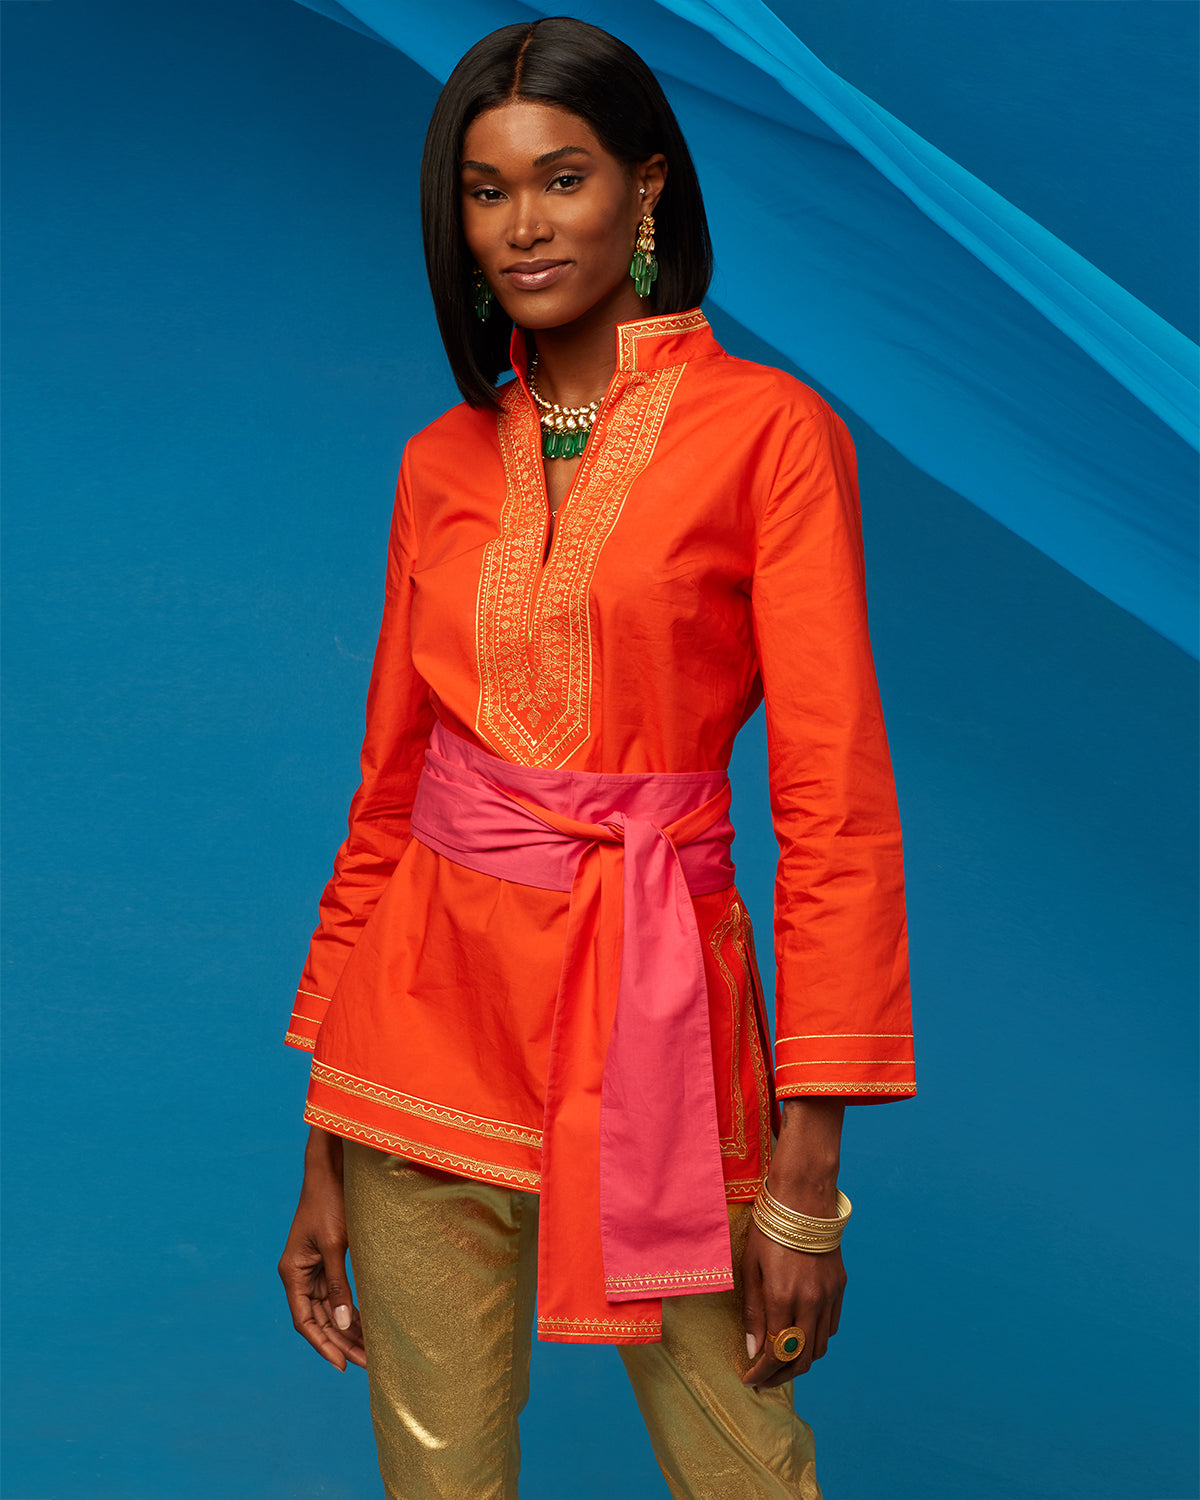 Maharani Reversible Sash Belt in Fuchsia and Coral Orange worn with Nicoblu Maharani Tunic